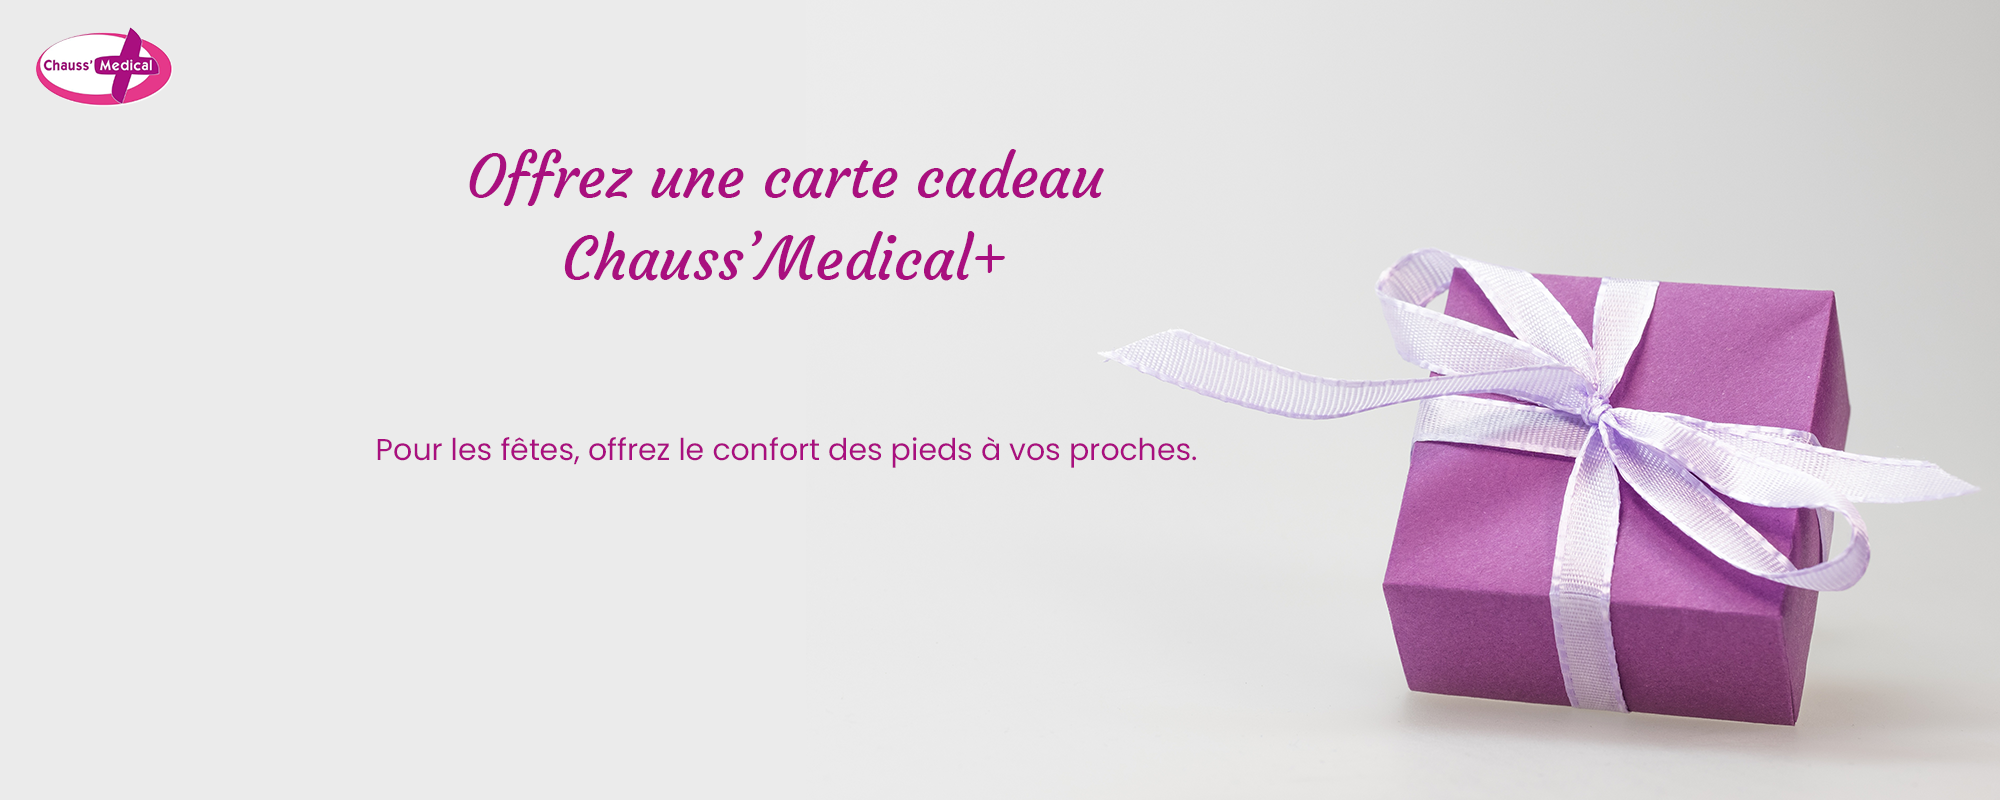 Offrez une e-carte cadeau Chauss’Medical+